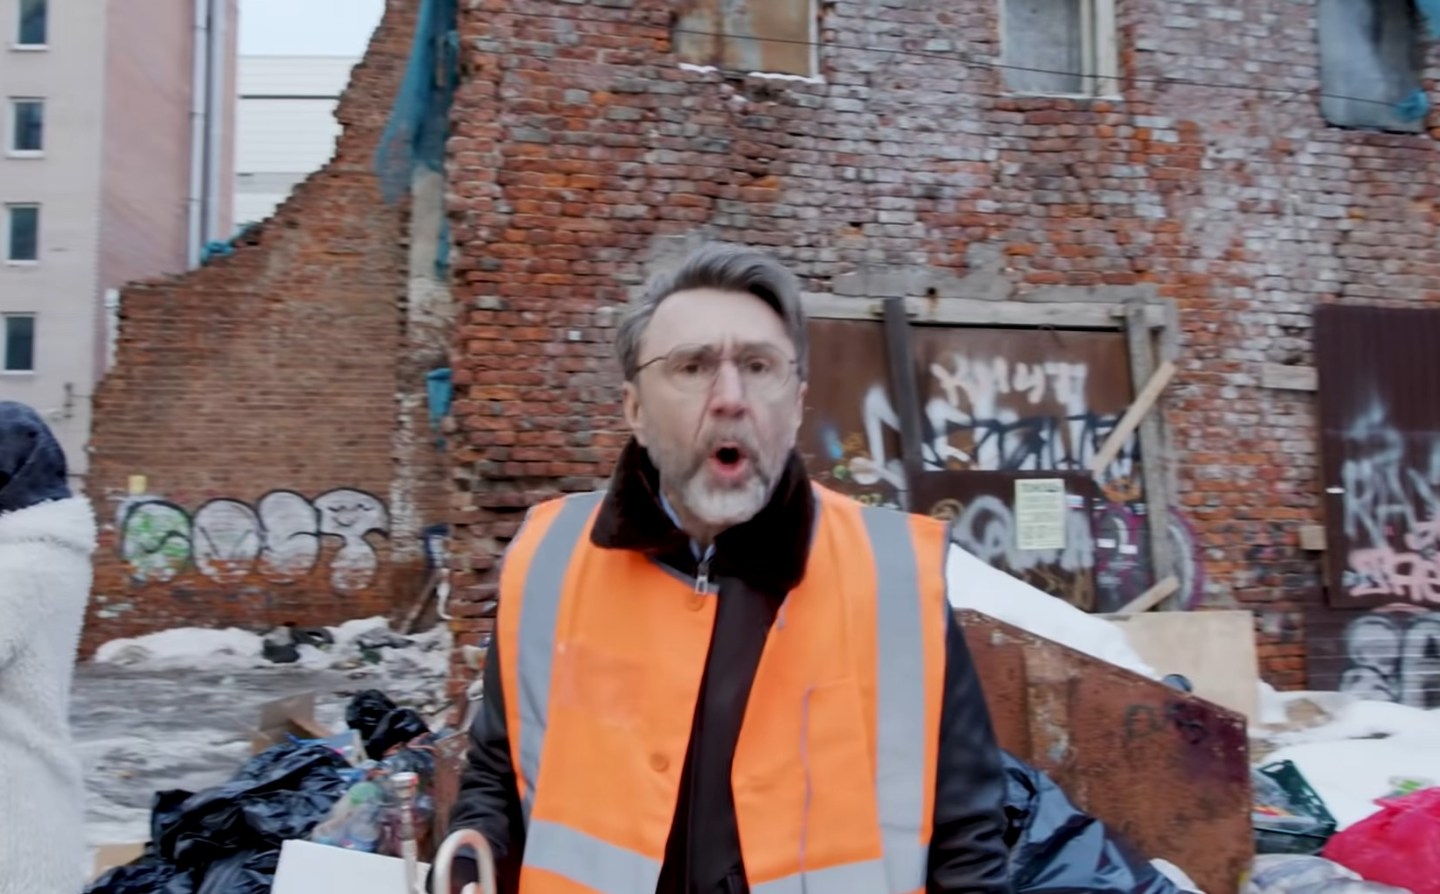 Вдохновленный мусорным коллапсом в Санкт-Петербурге, Сергей Шнуров выпустил клип о плохой работе местных коммунальщиков